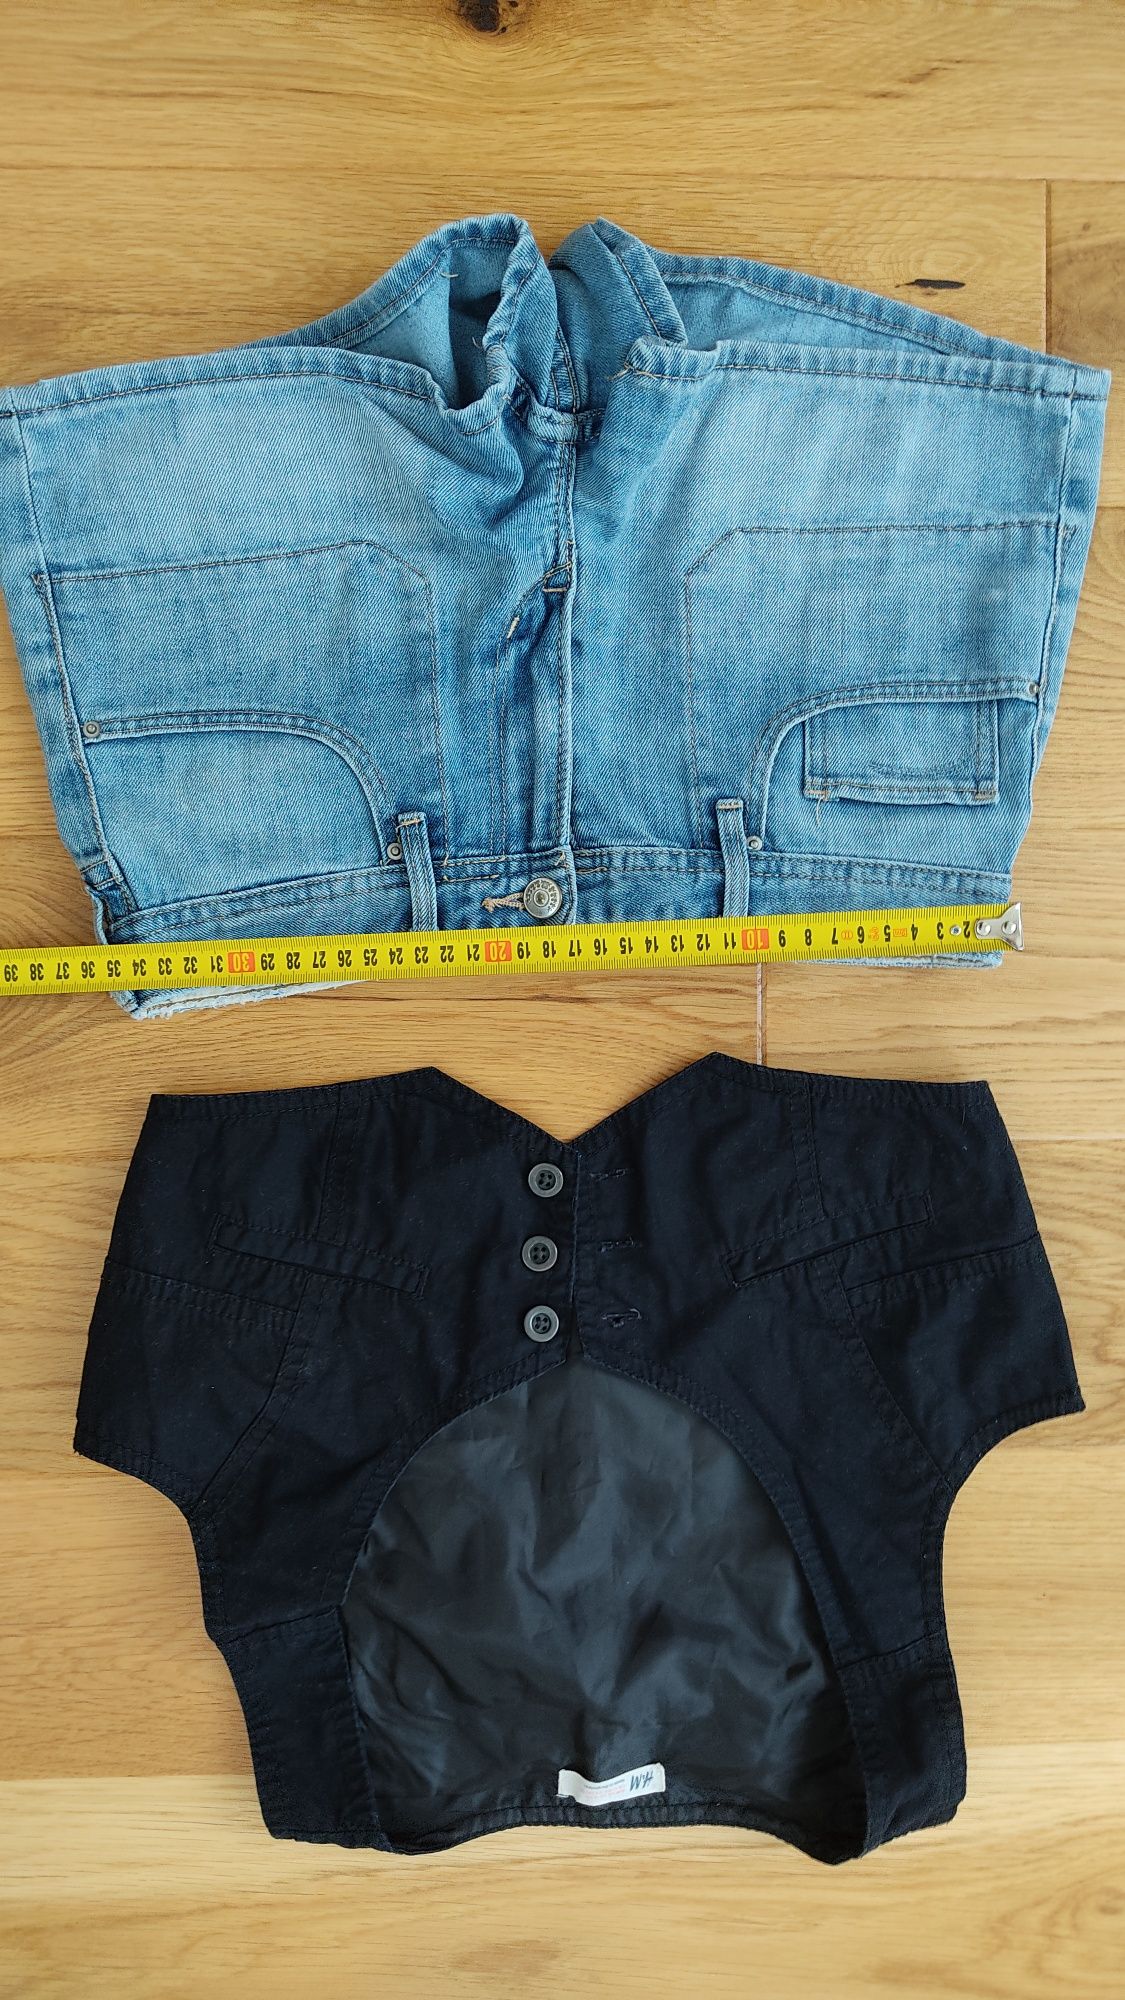 Zestaw wiosenny: shorty jeansowe i kamizelka, U&M, 158